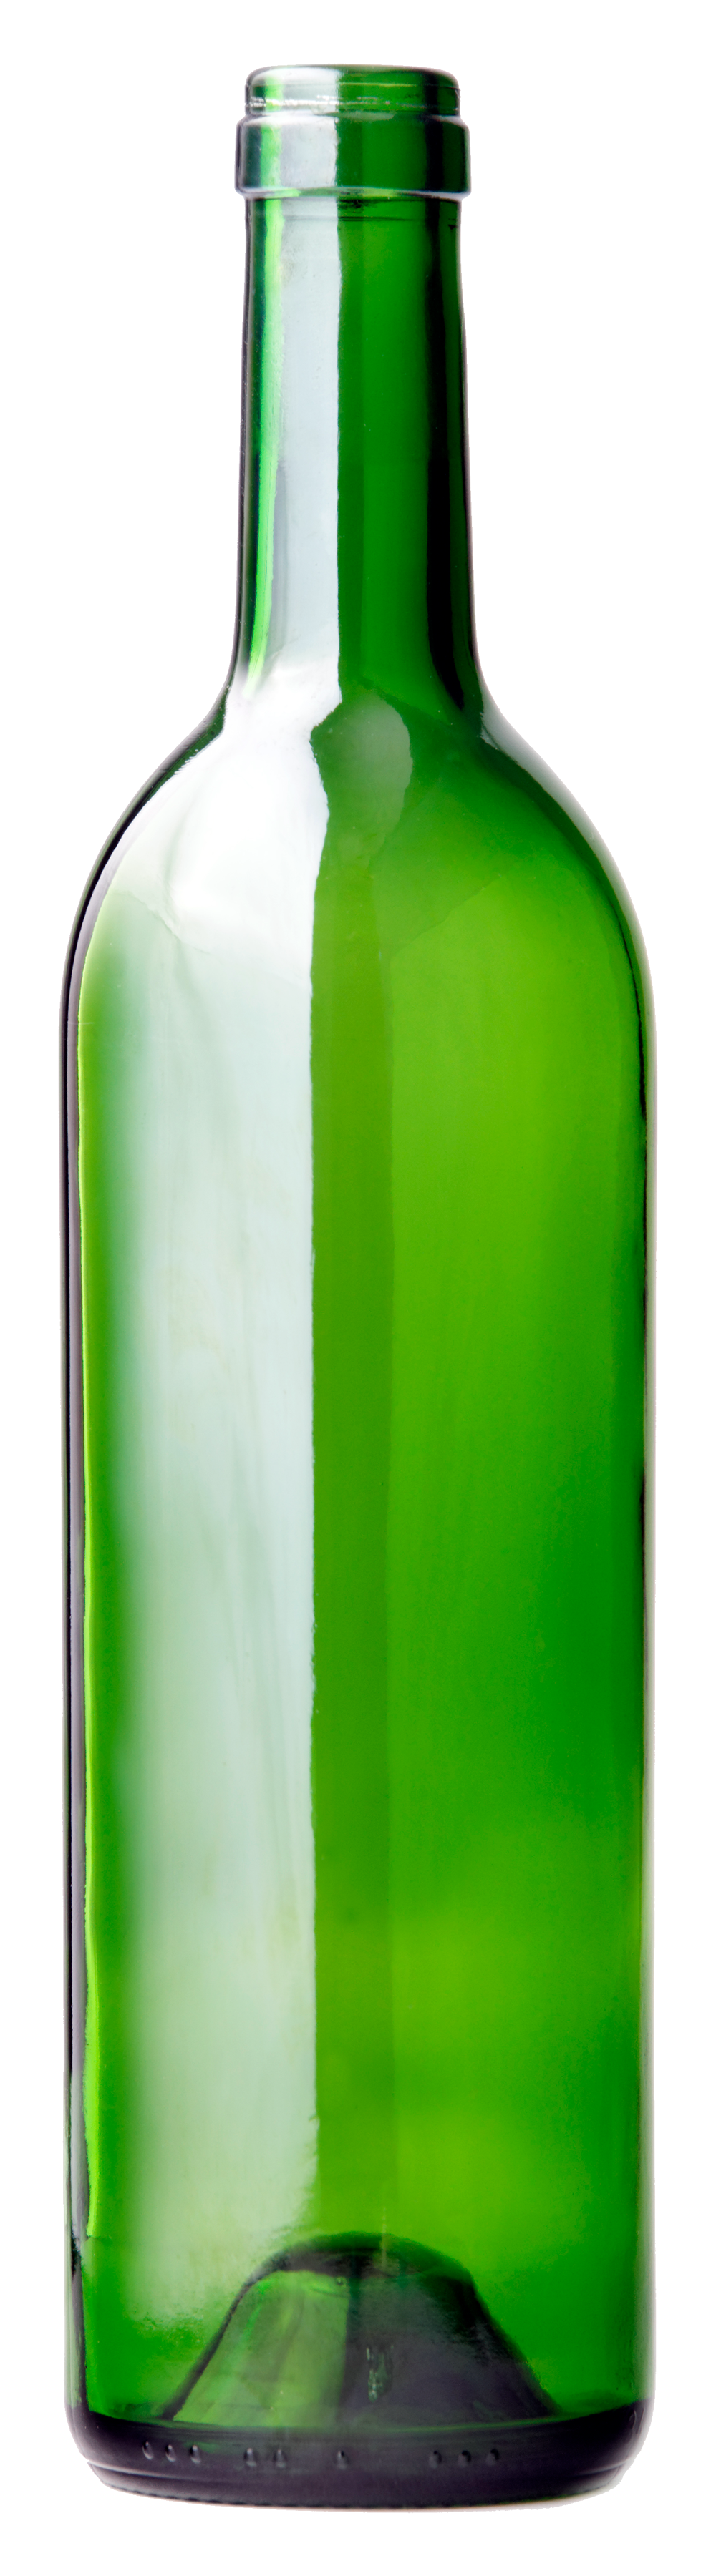 Garrafa de vinho de vidro verde